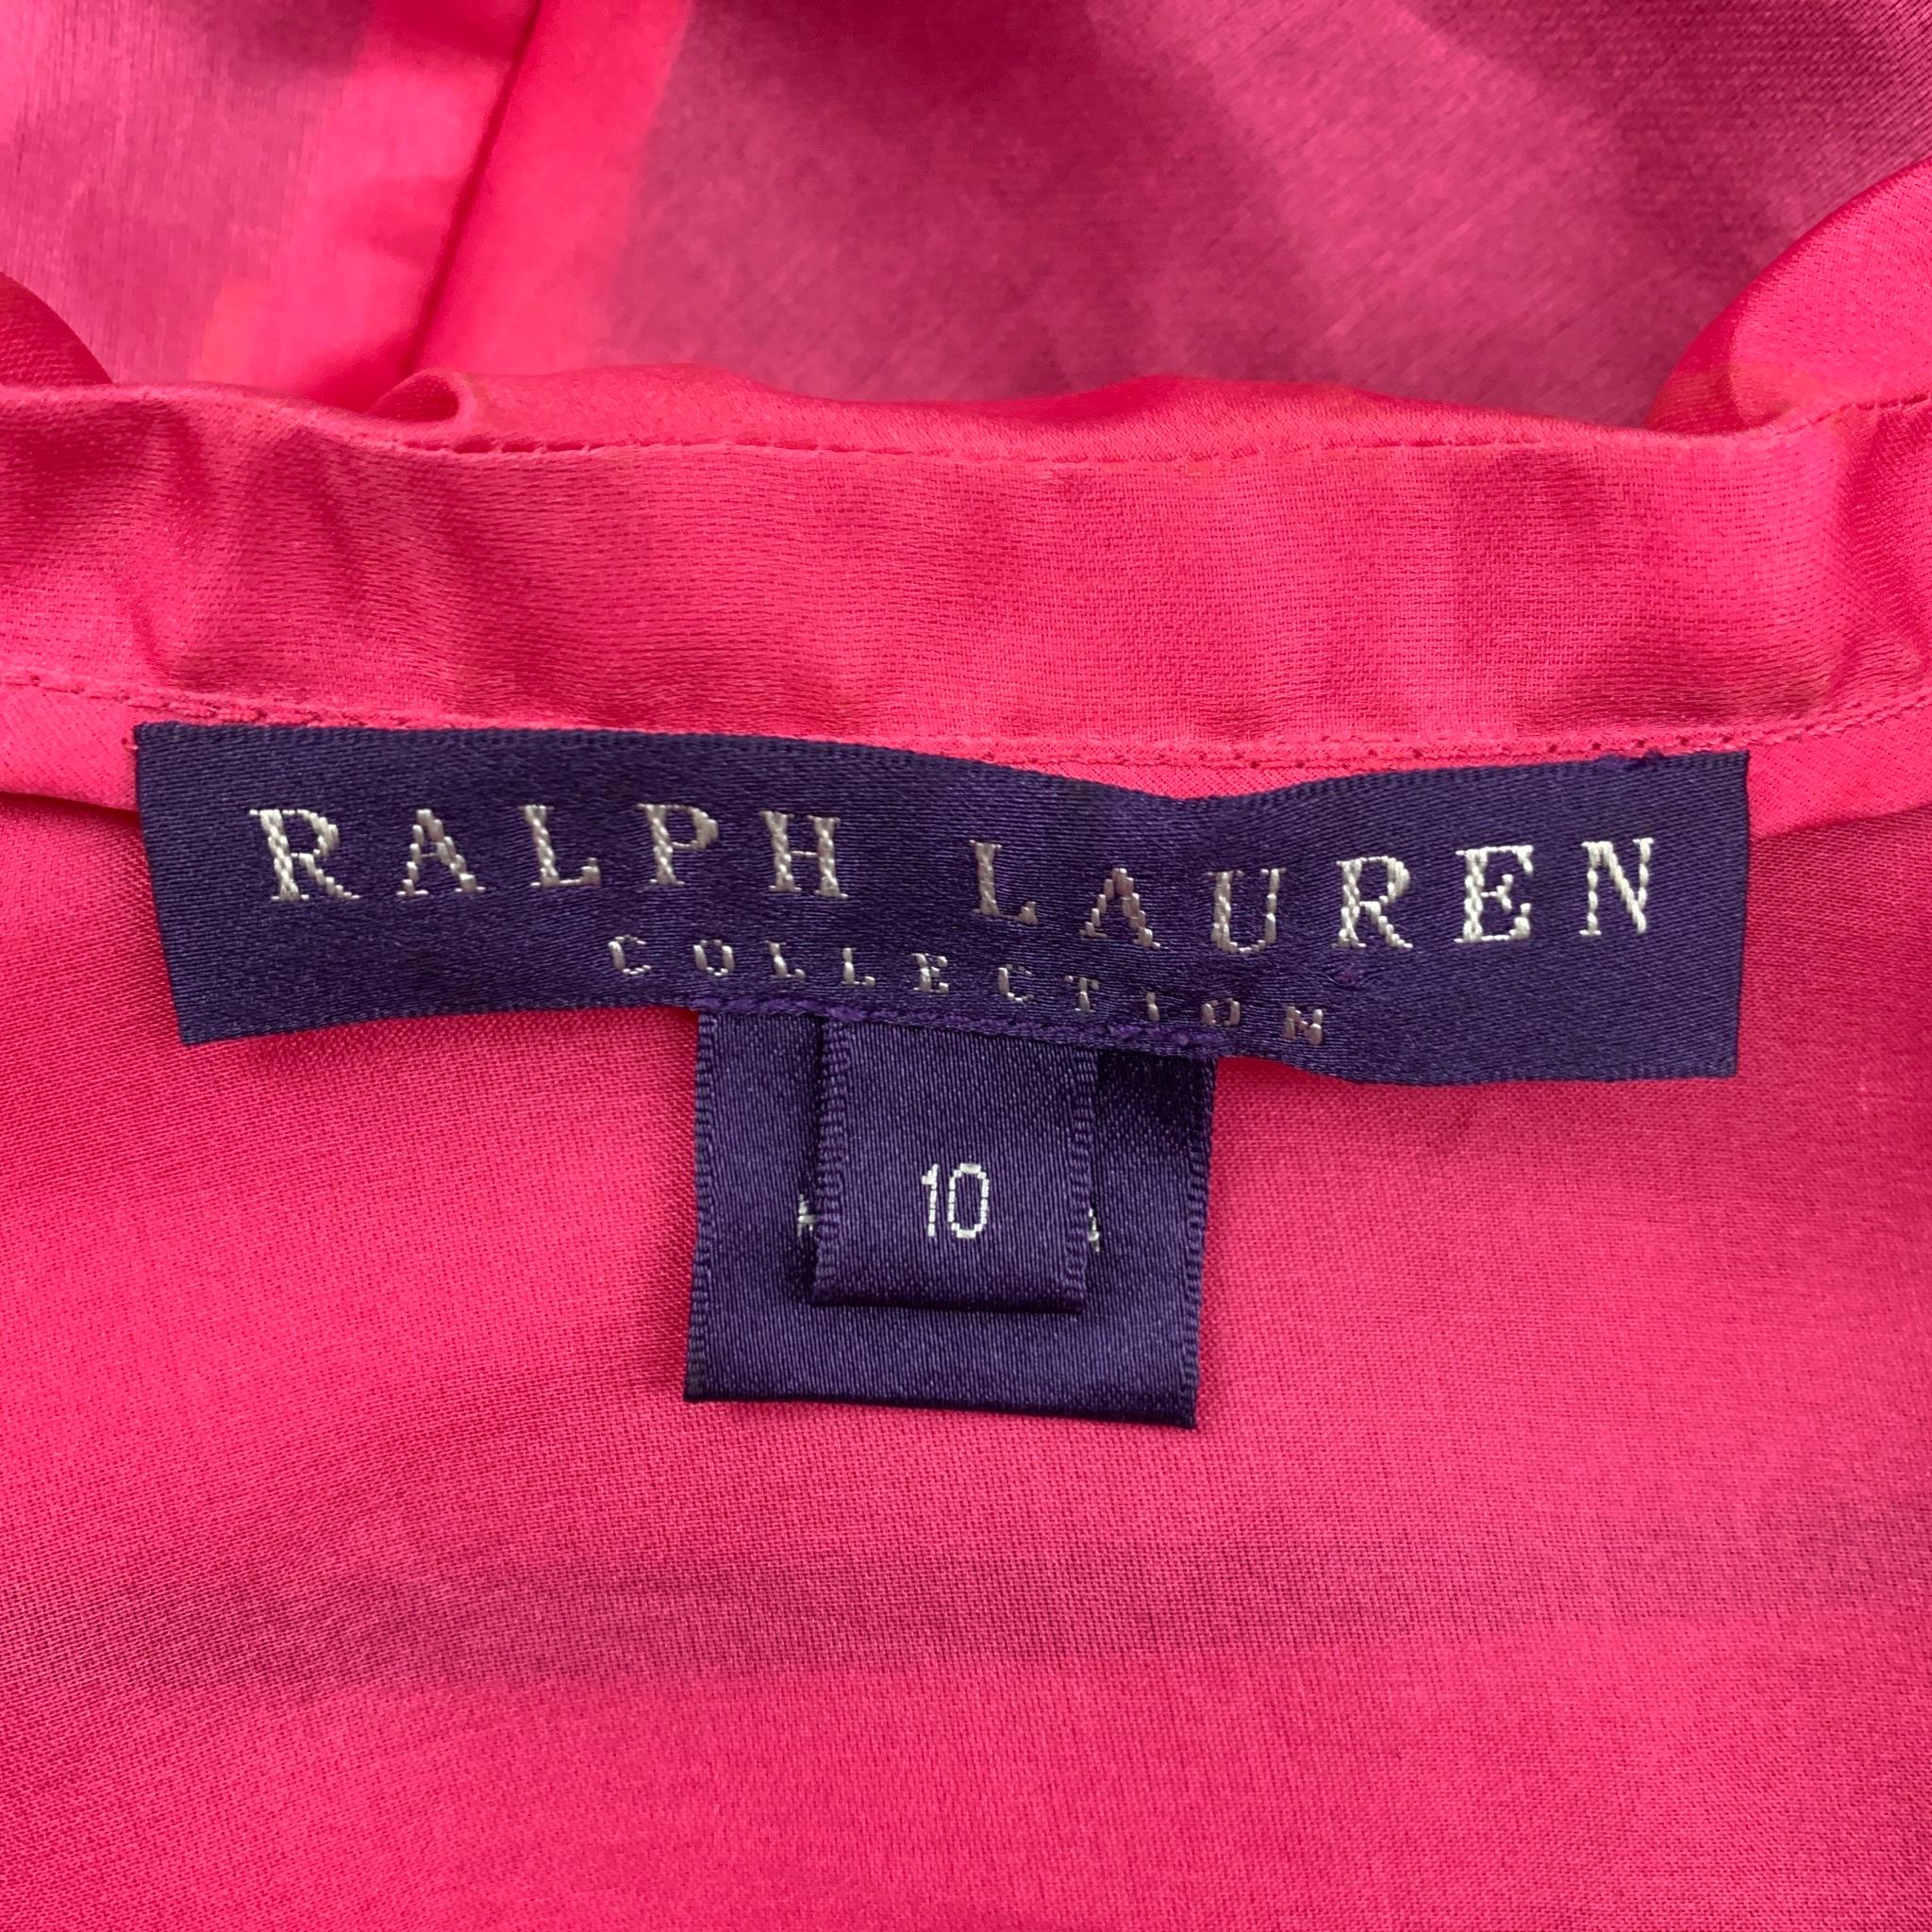 RALPH LAUREN Collection Size 10 Pink Black Silk Dress Top 1